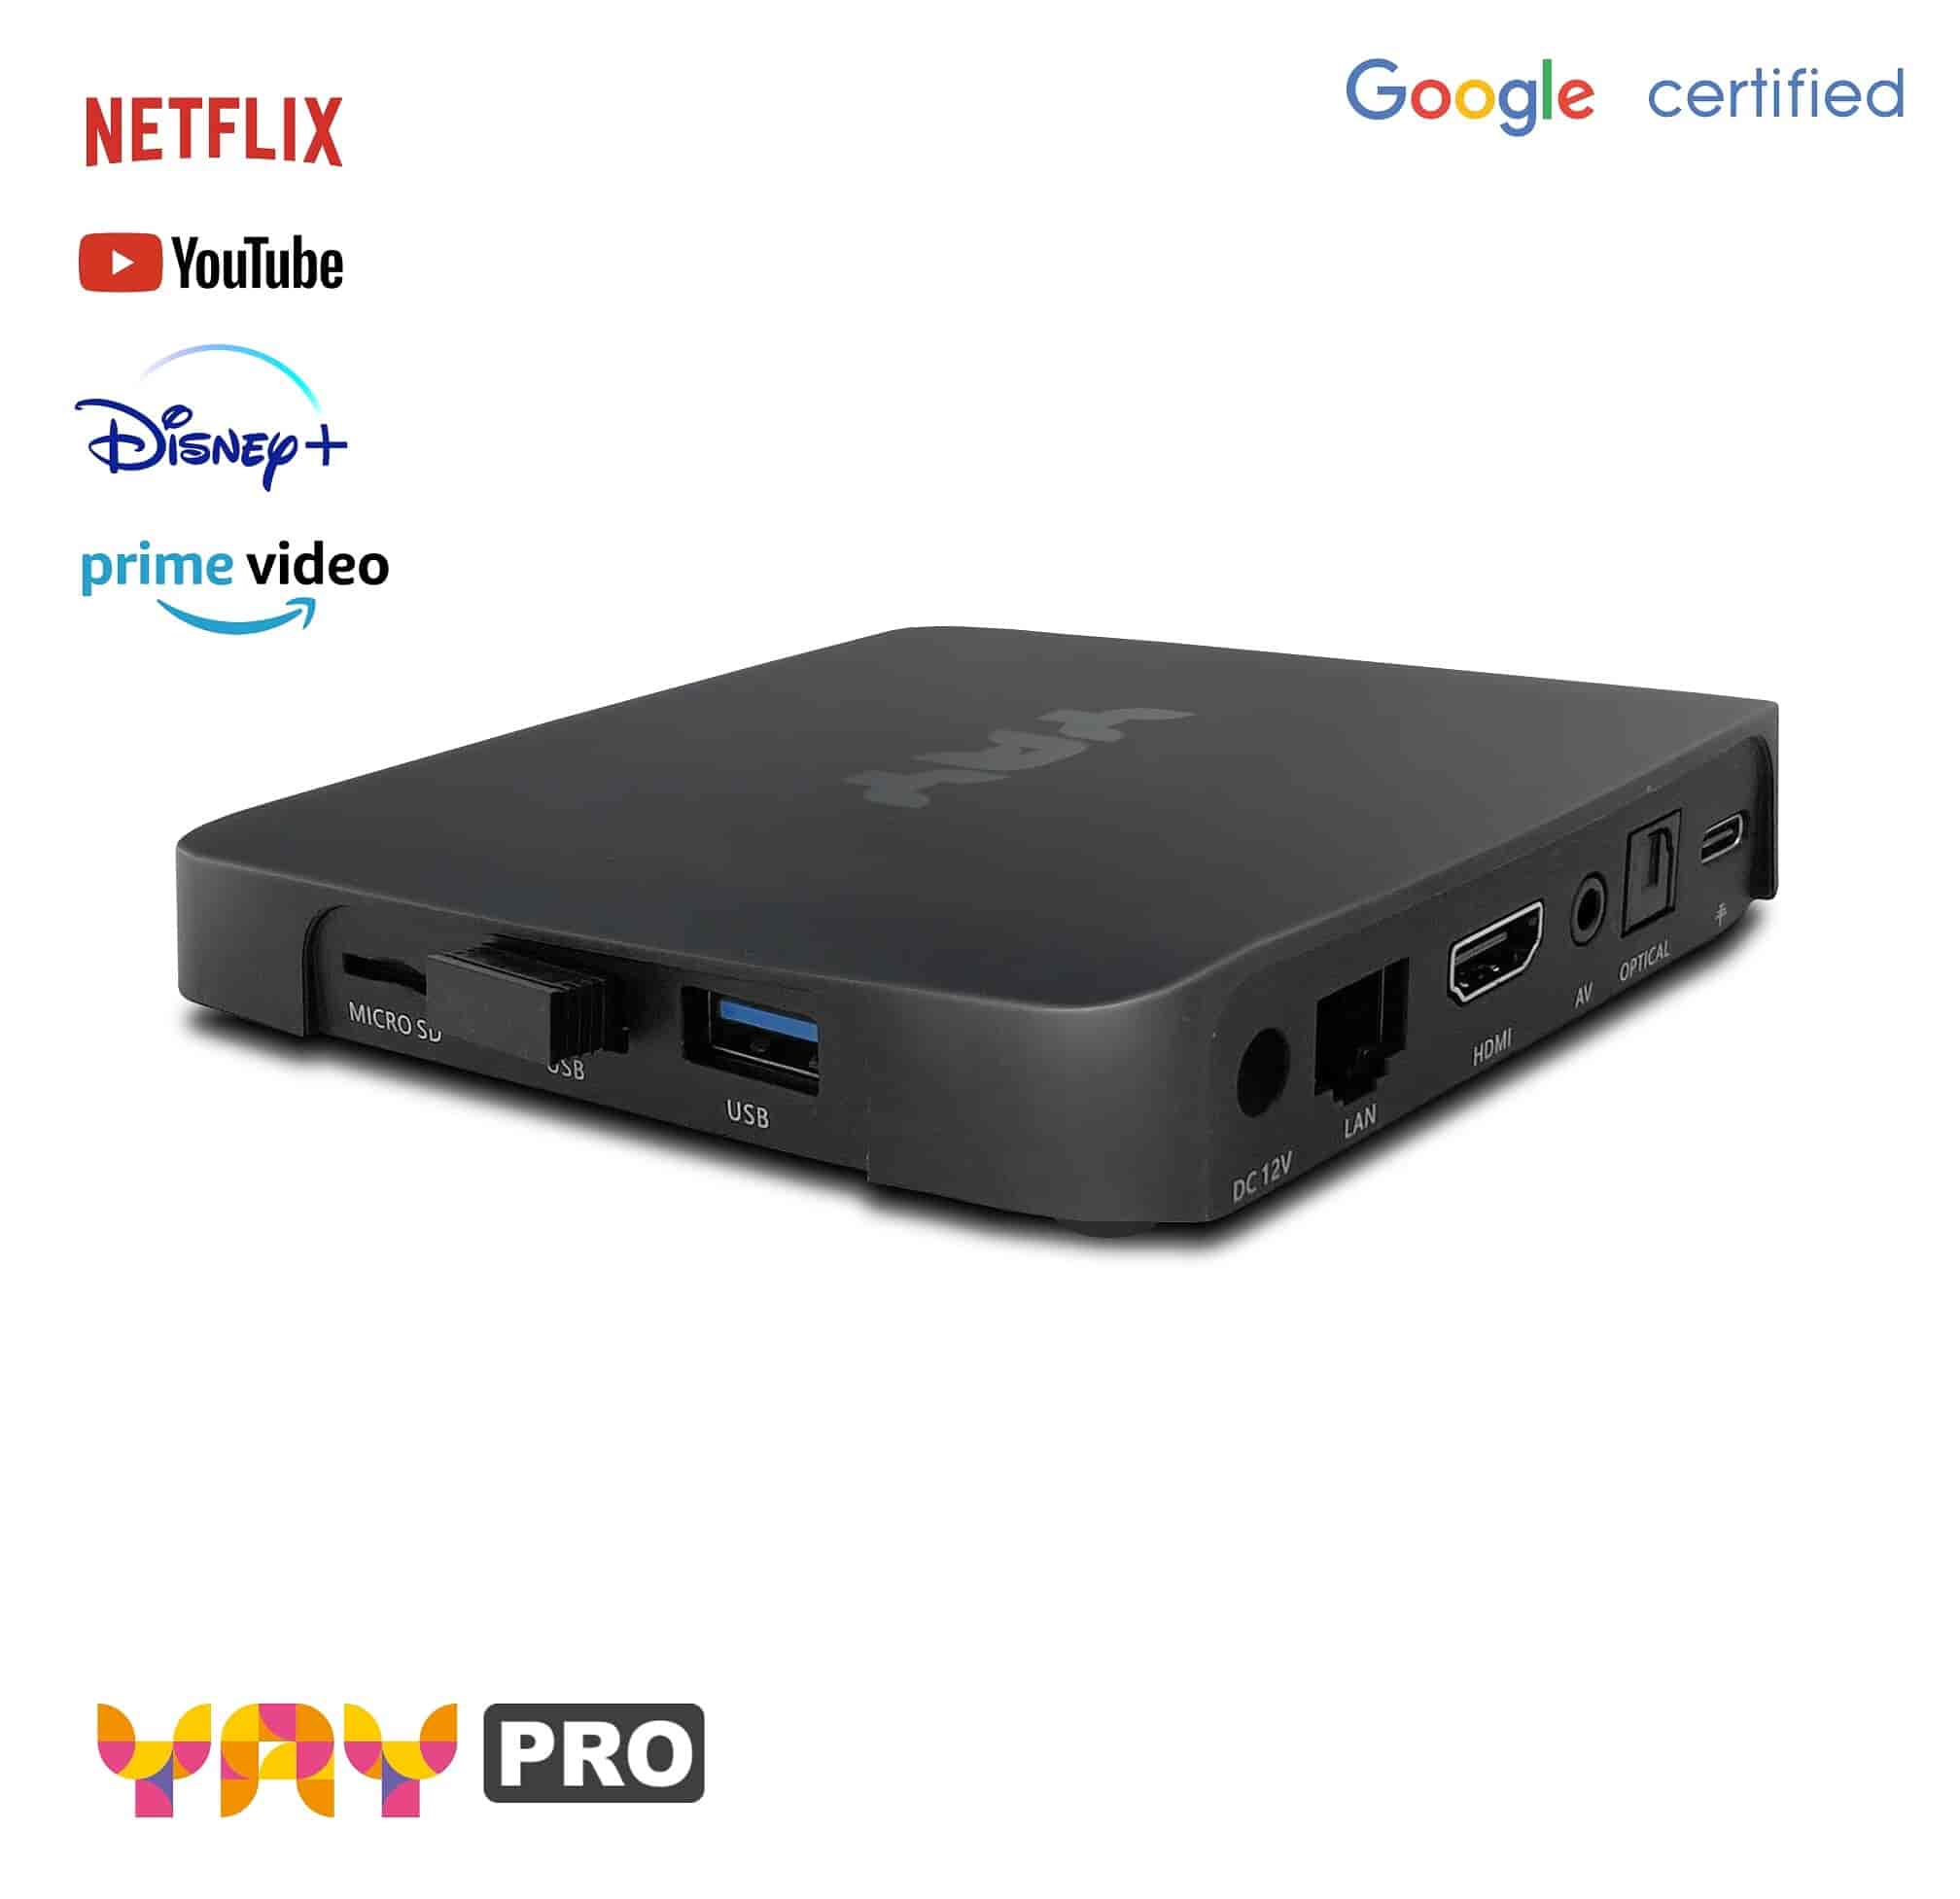 VU+ YAY GO,4K UHD Android 10.0 Streamingboks med Chromecast-DEMOVAREVU+Brugt - Demo VU+ YAY GO,4K UHD Android 10.0 Streamingboks med Chromecast. Streamingboks VU+ YAY GO kører med Android TV-operativsystemet 10.0 og integreret Chromecast. Dette giver dem en velkendt Android-oplevelse direkte på dit TV. Populære apps som Netflix 4K, Amazon Prime Video, Disney+, DAZN, YouTube, Google Play og mange flere er tilgængelige med det samme. Demovare - retur fra kunde men 100% som ny.